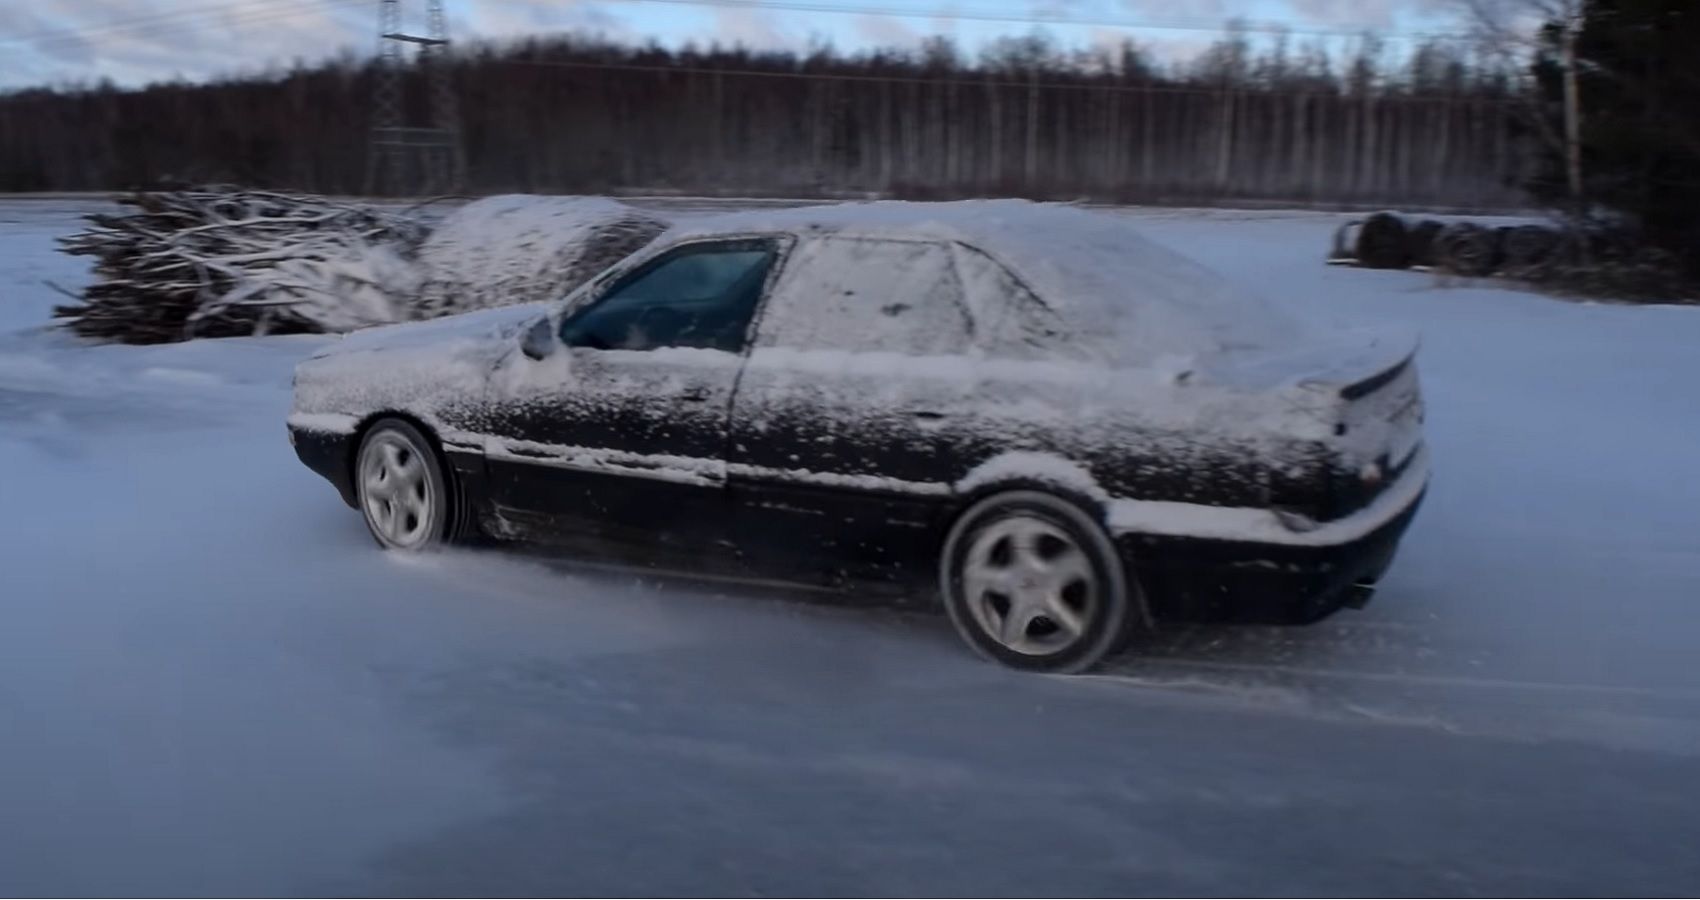 1990 Audi 90 Quattro in the snow